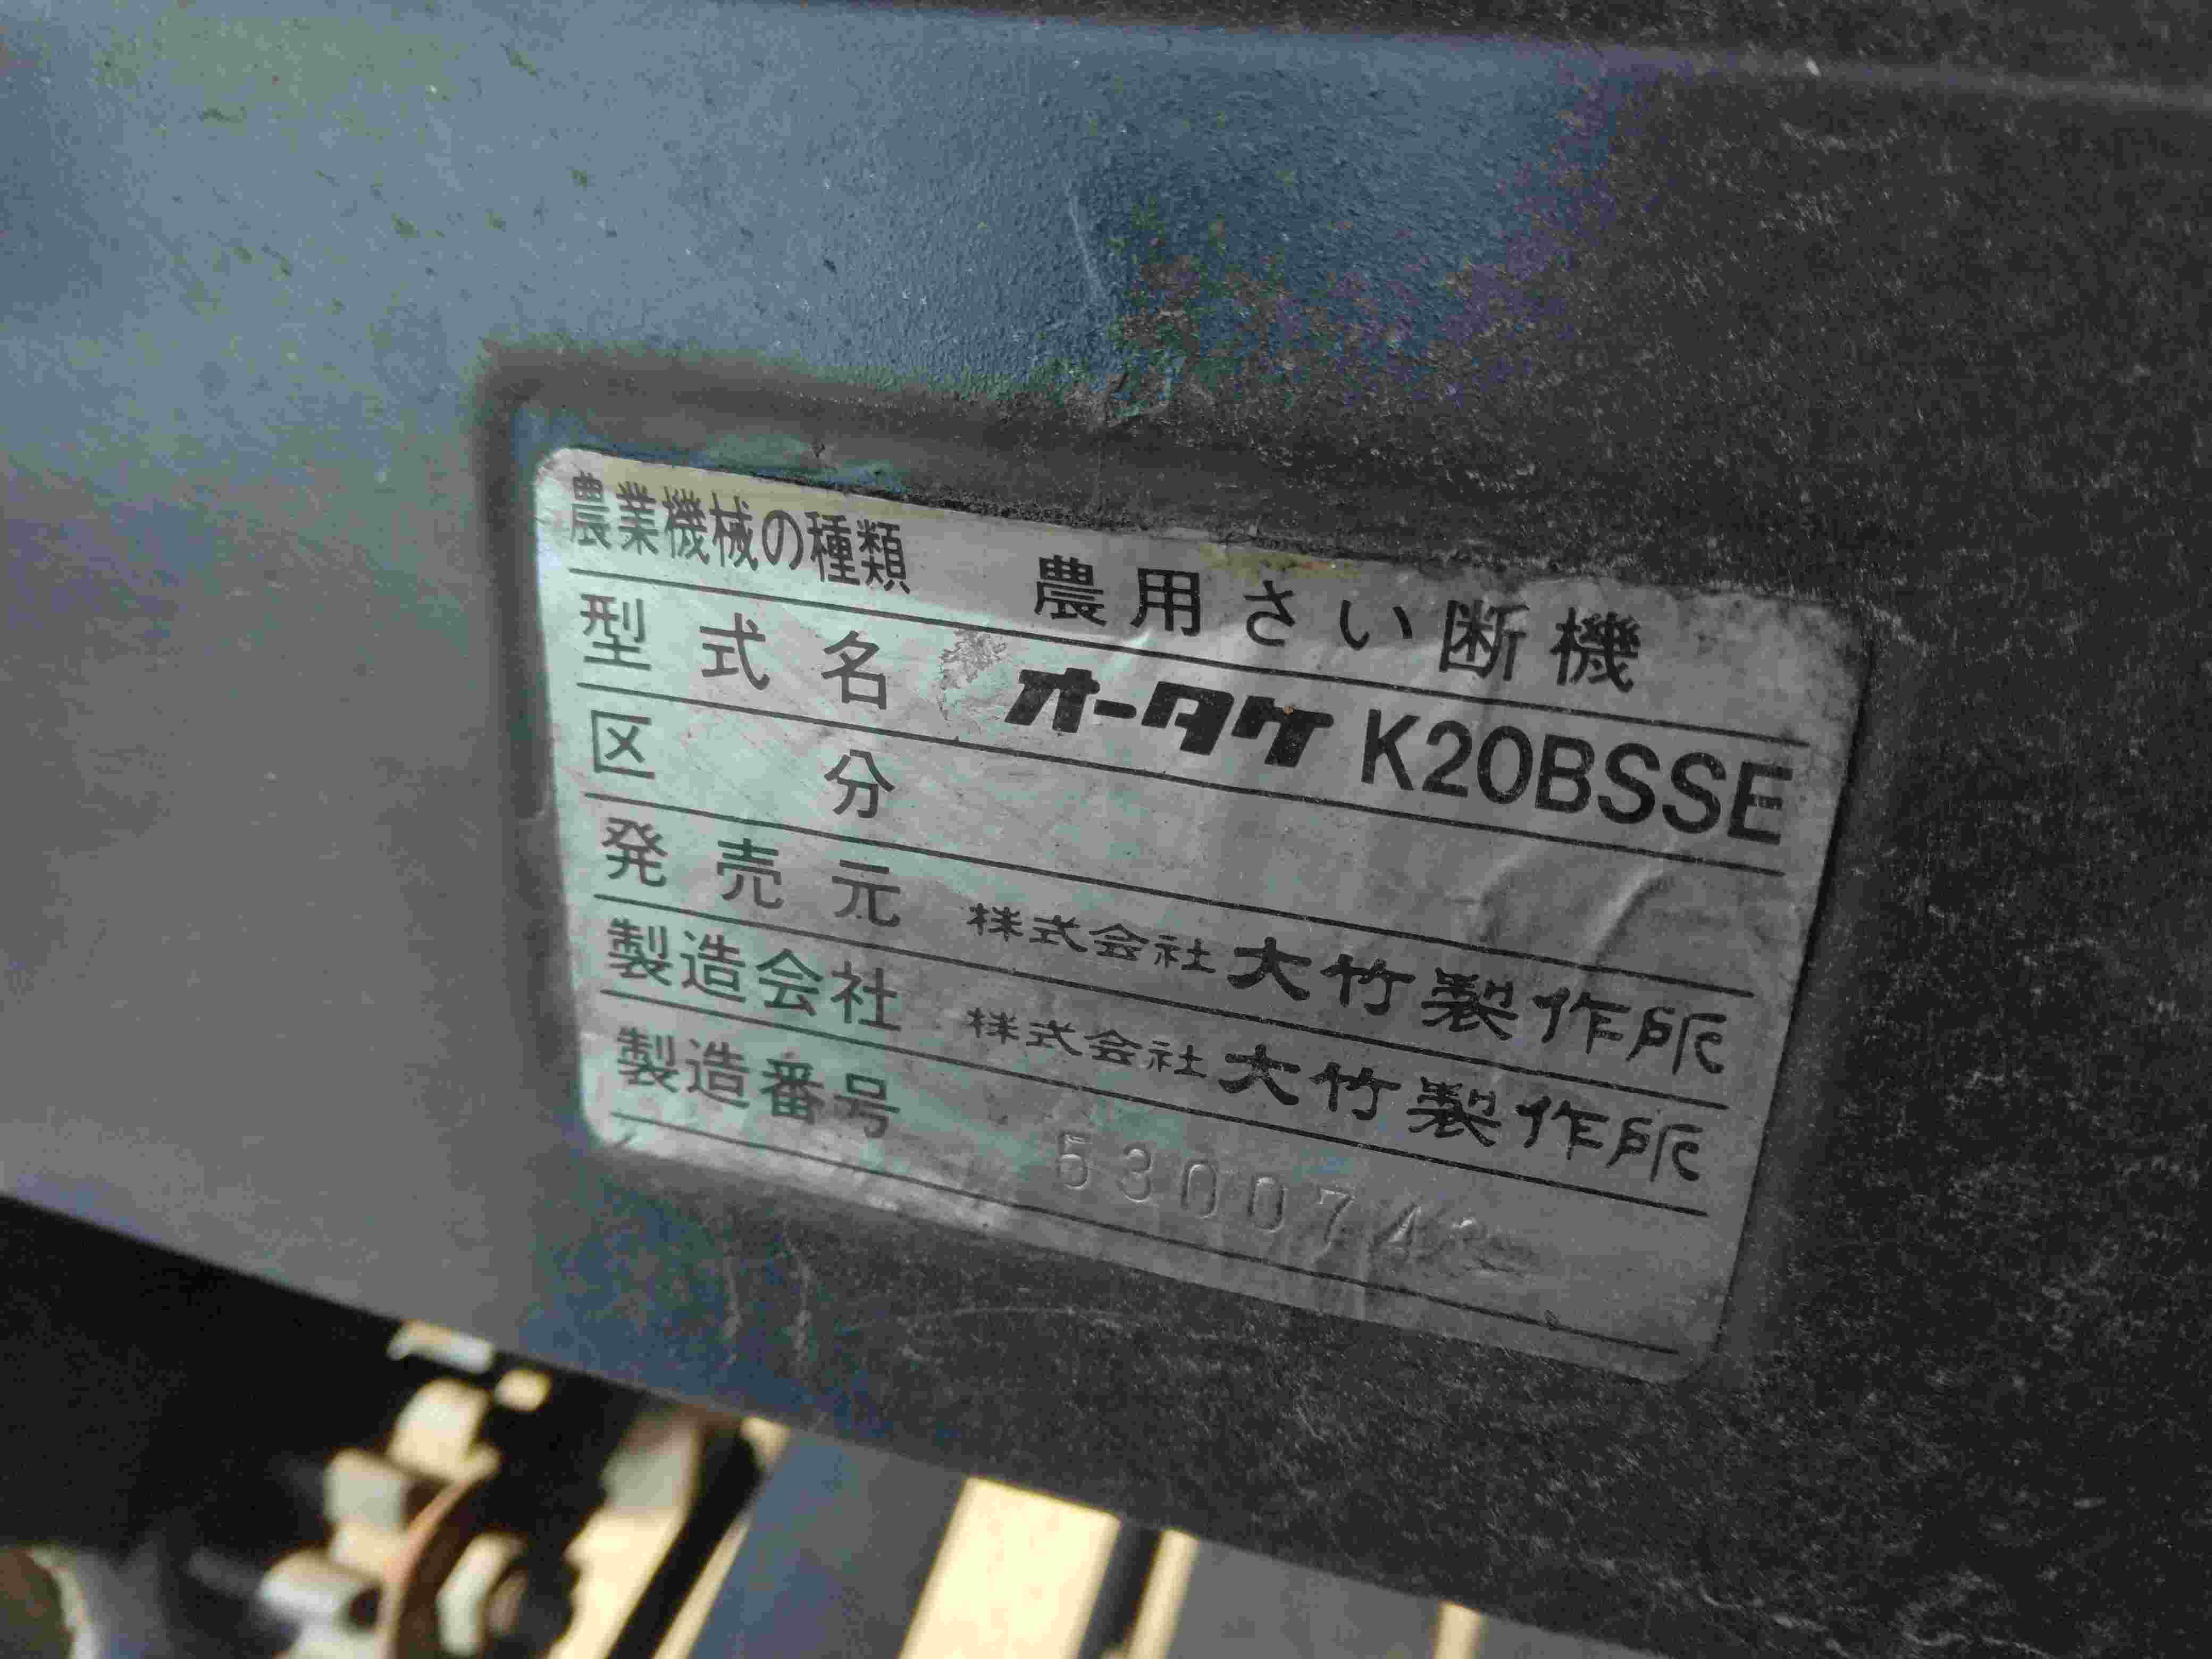 大竹製作所 中古その他 K20BSSEの商品画像10